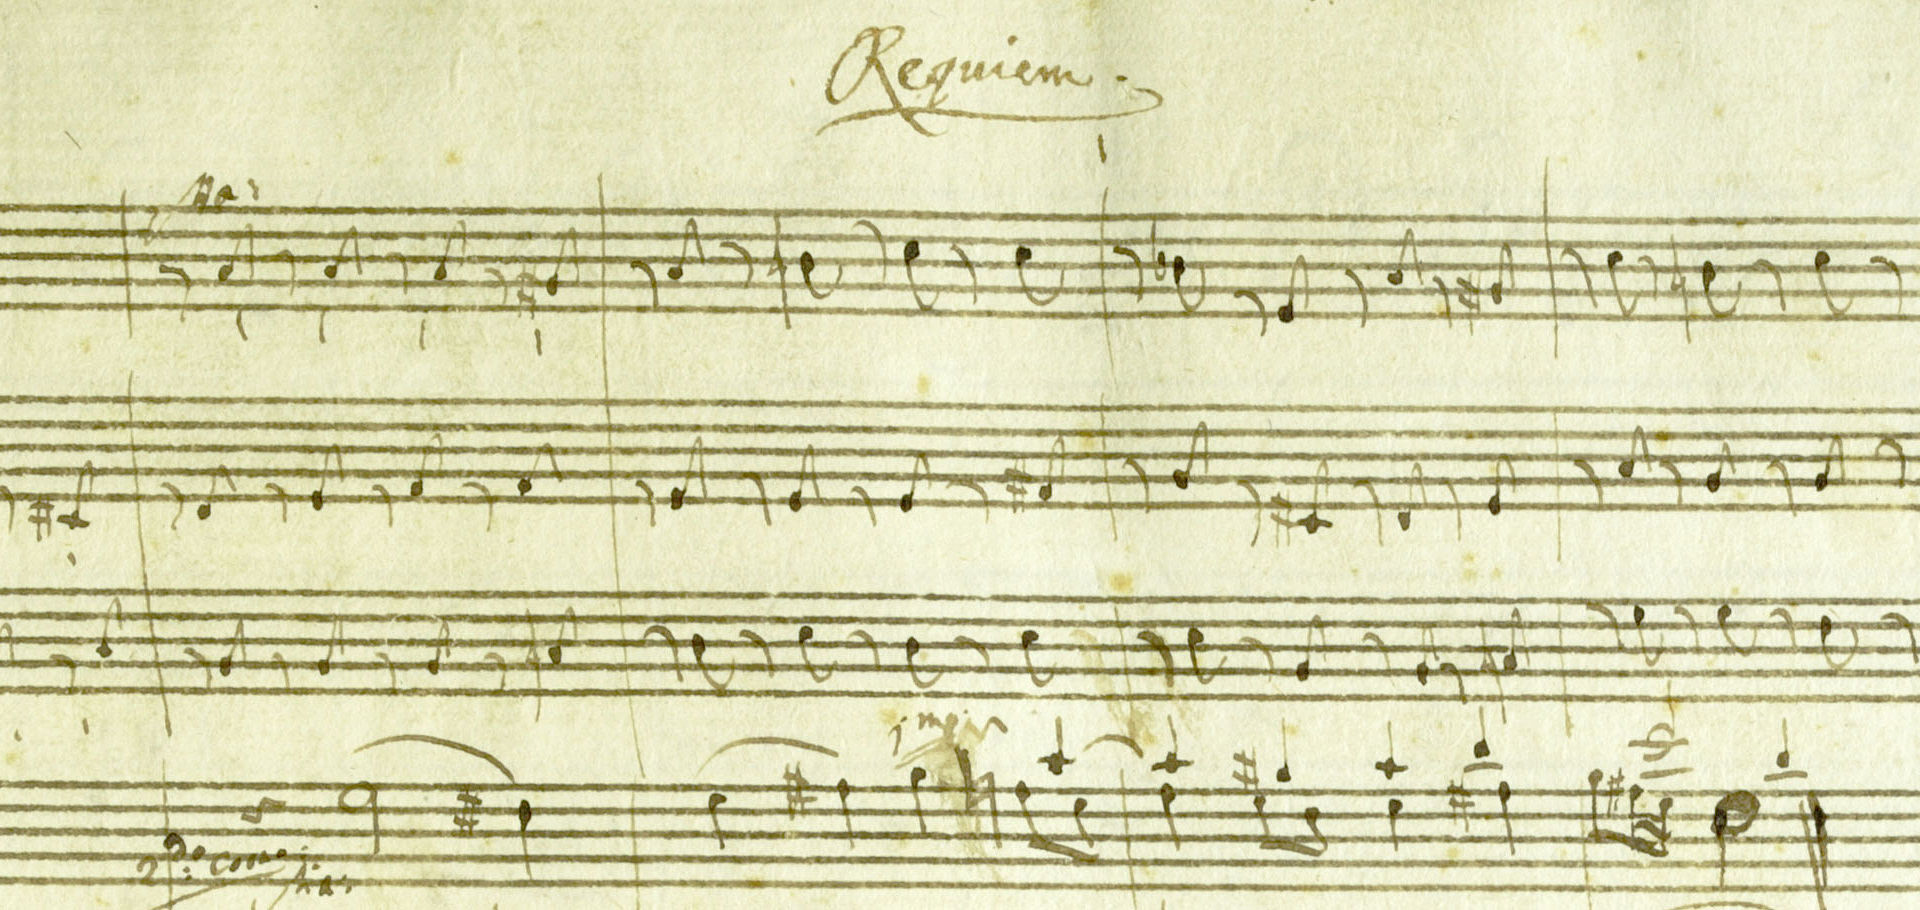 Mozart's Requiem